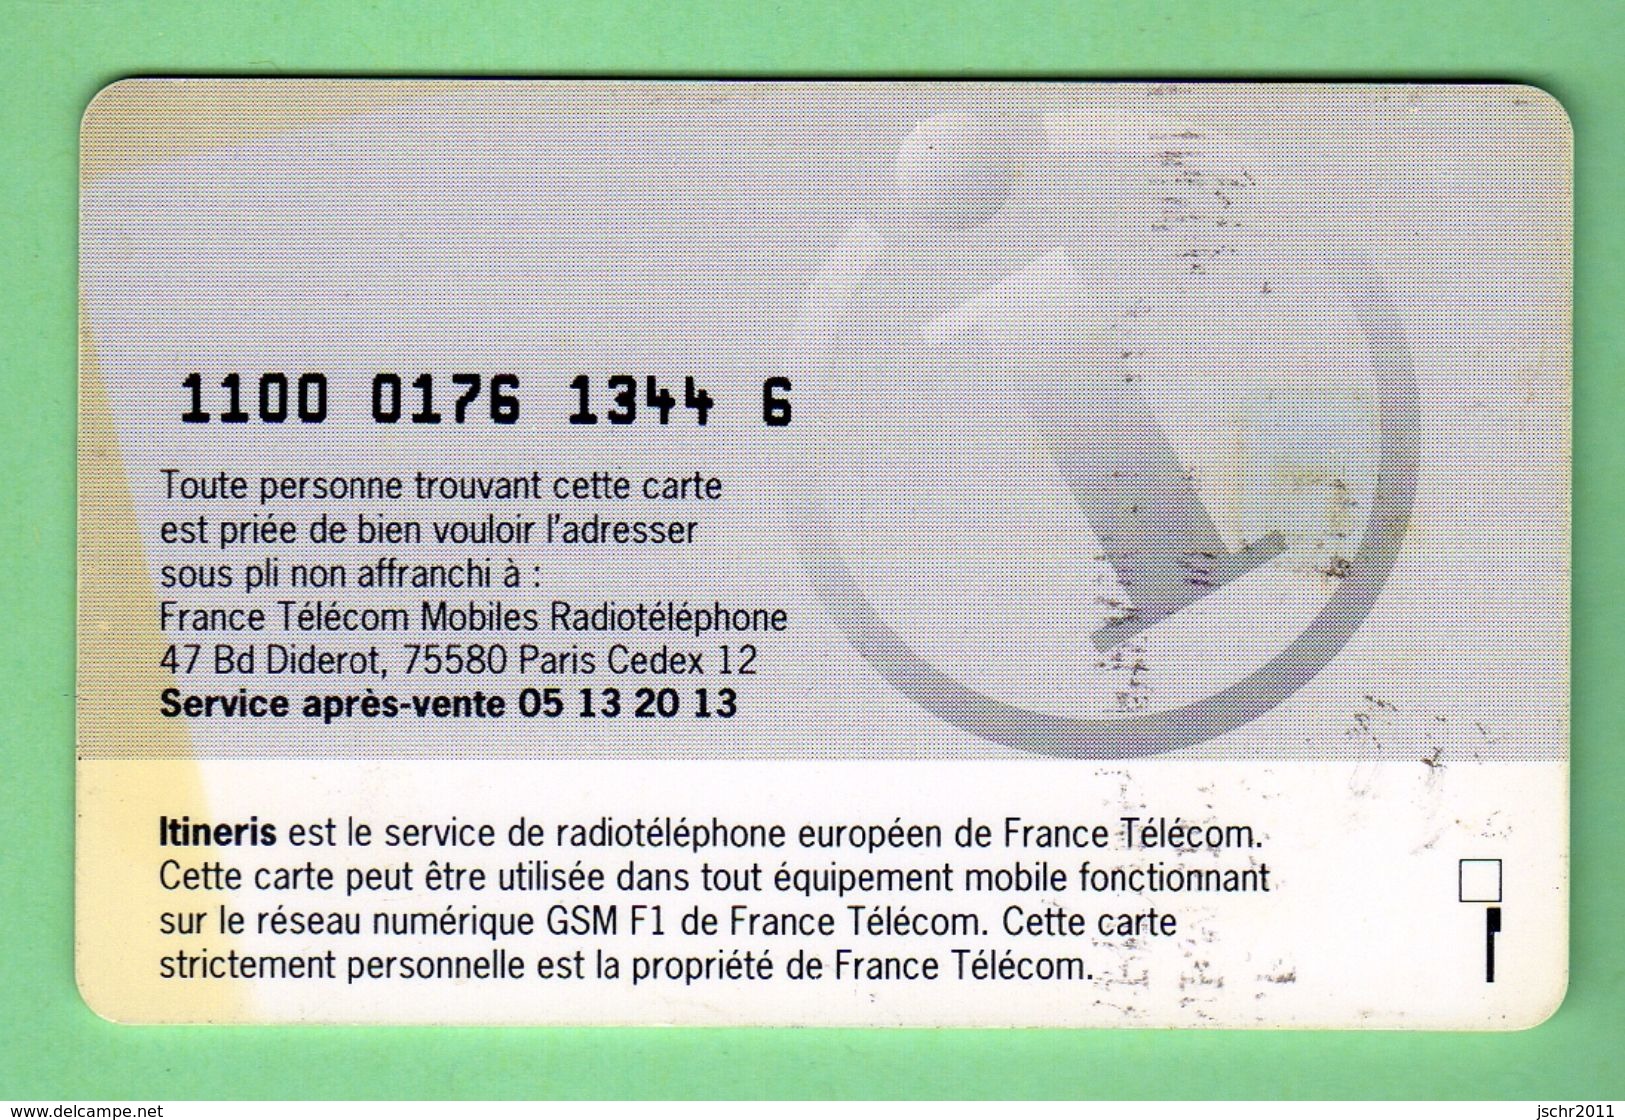 FRANCE TELECOM *** CARTE ITINERIS *** (A7-P8) - Mobicartes (GSM/SIM)